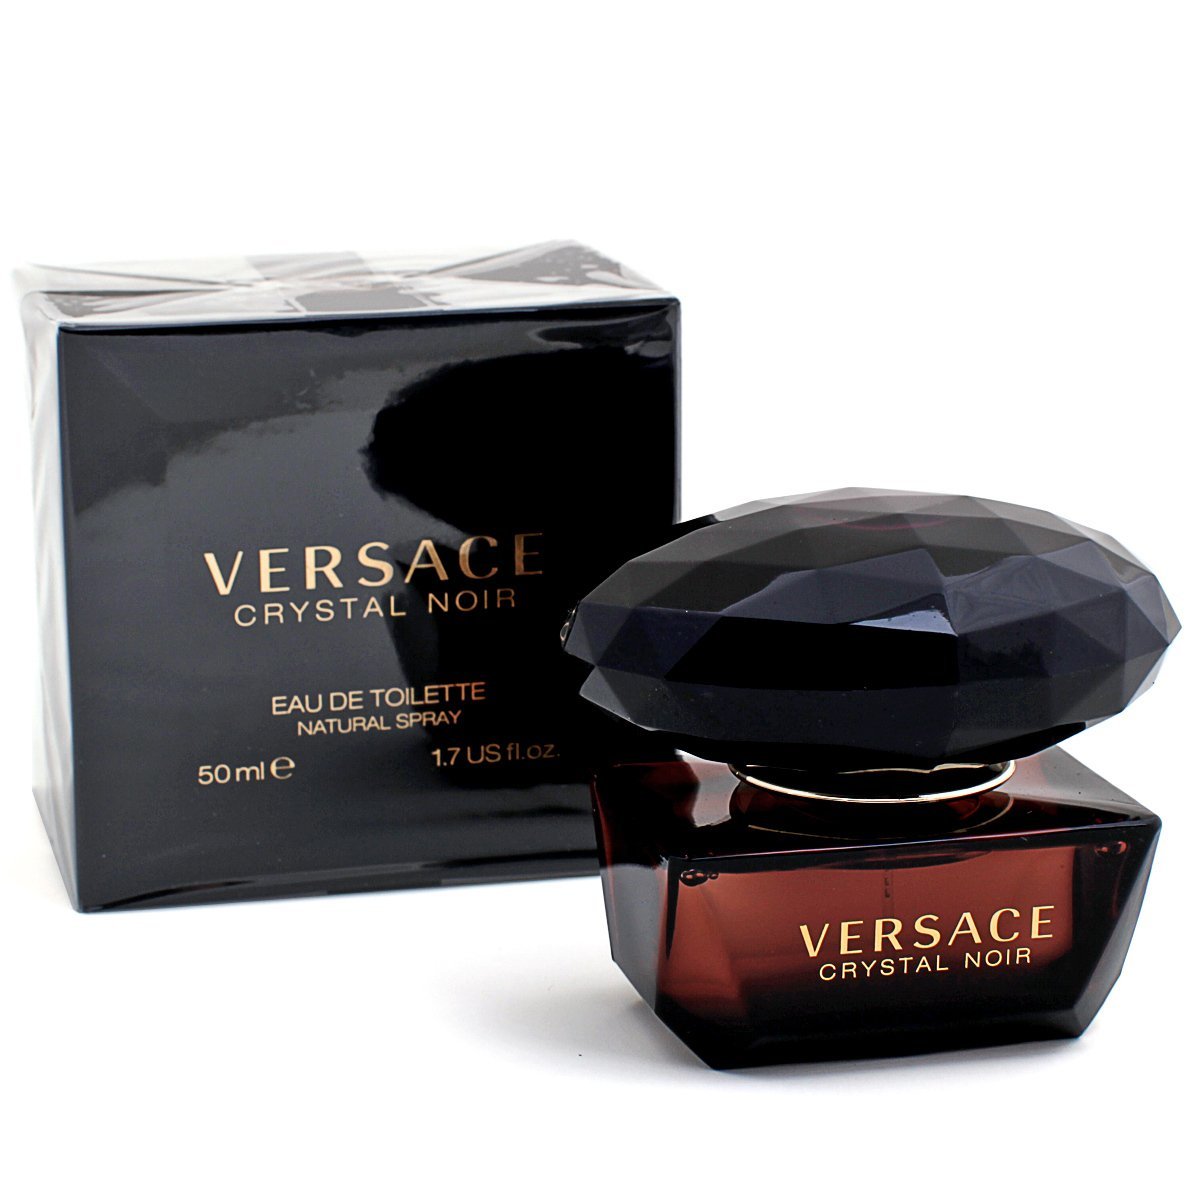 versace black crystal noir perfume